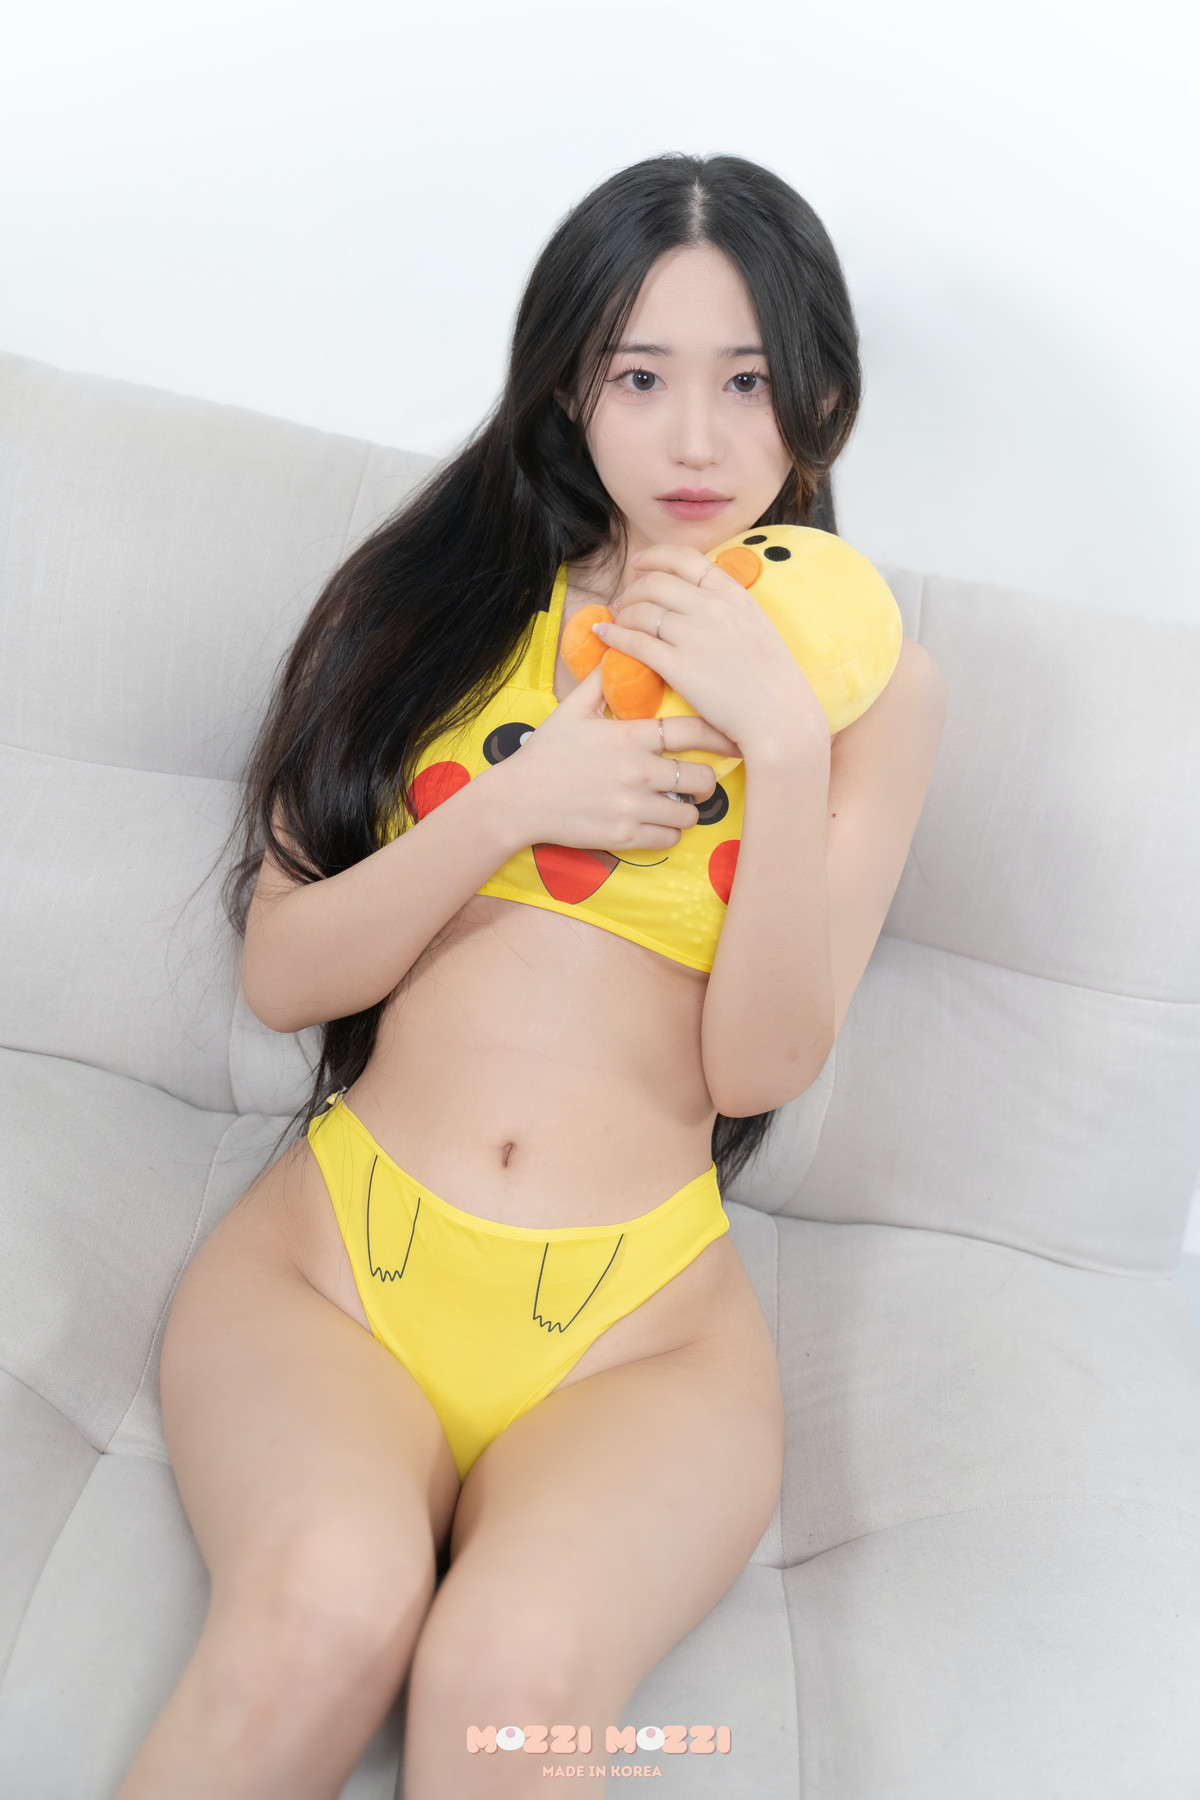 Mei 메이, [MozziMozzi] A Wild Pikachu